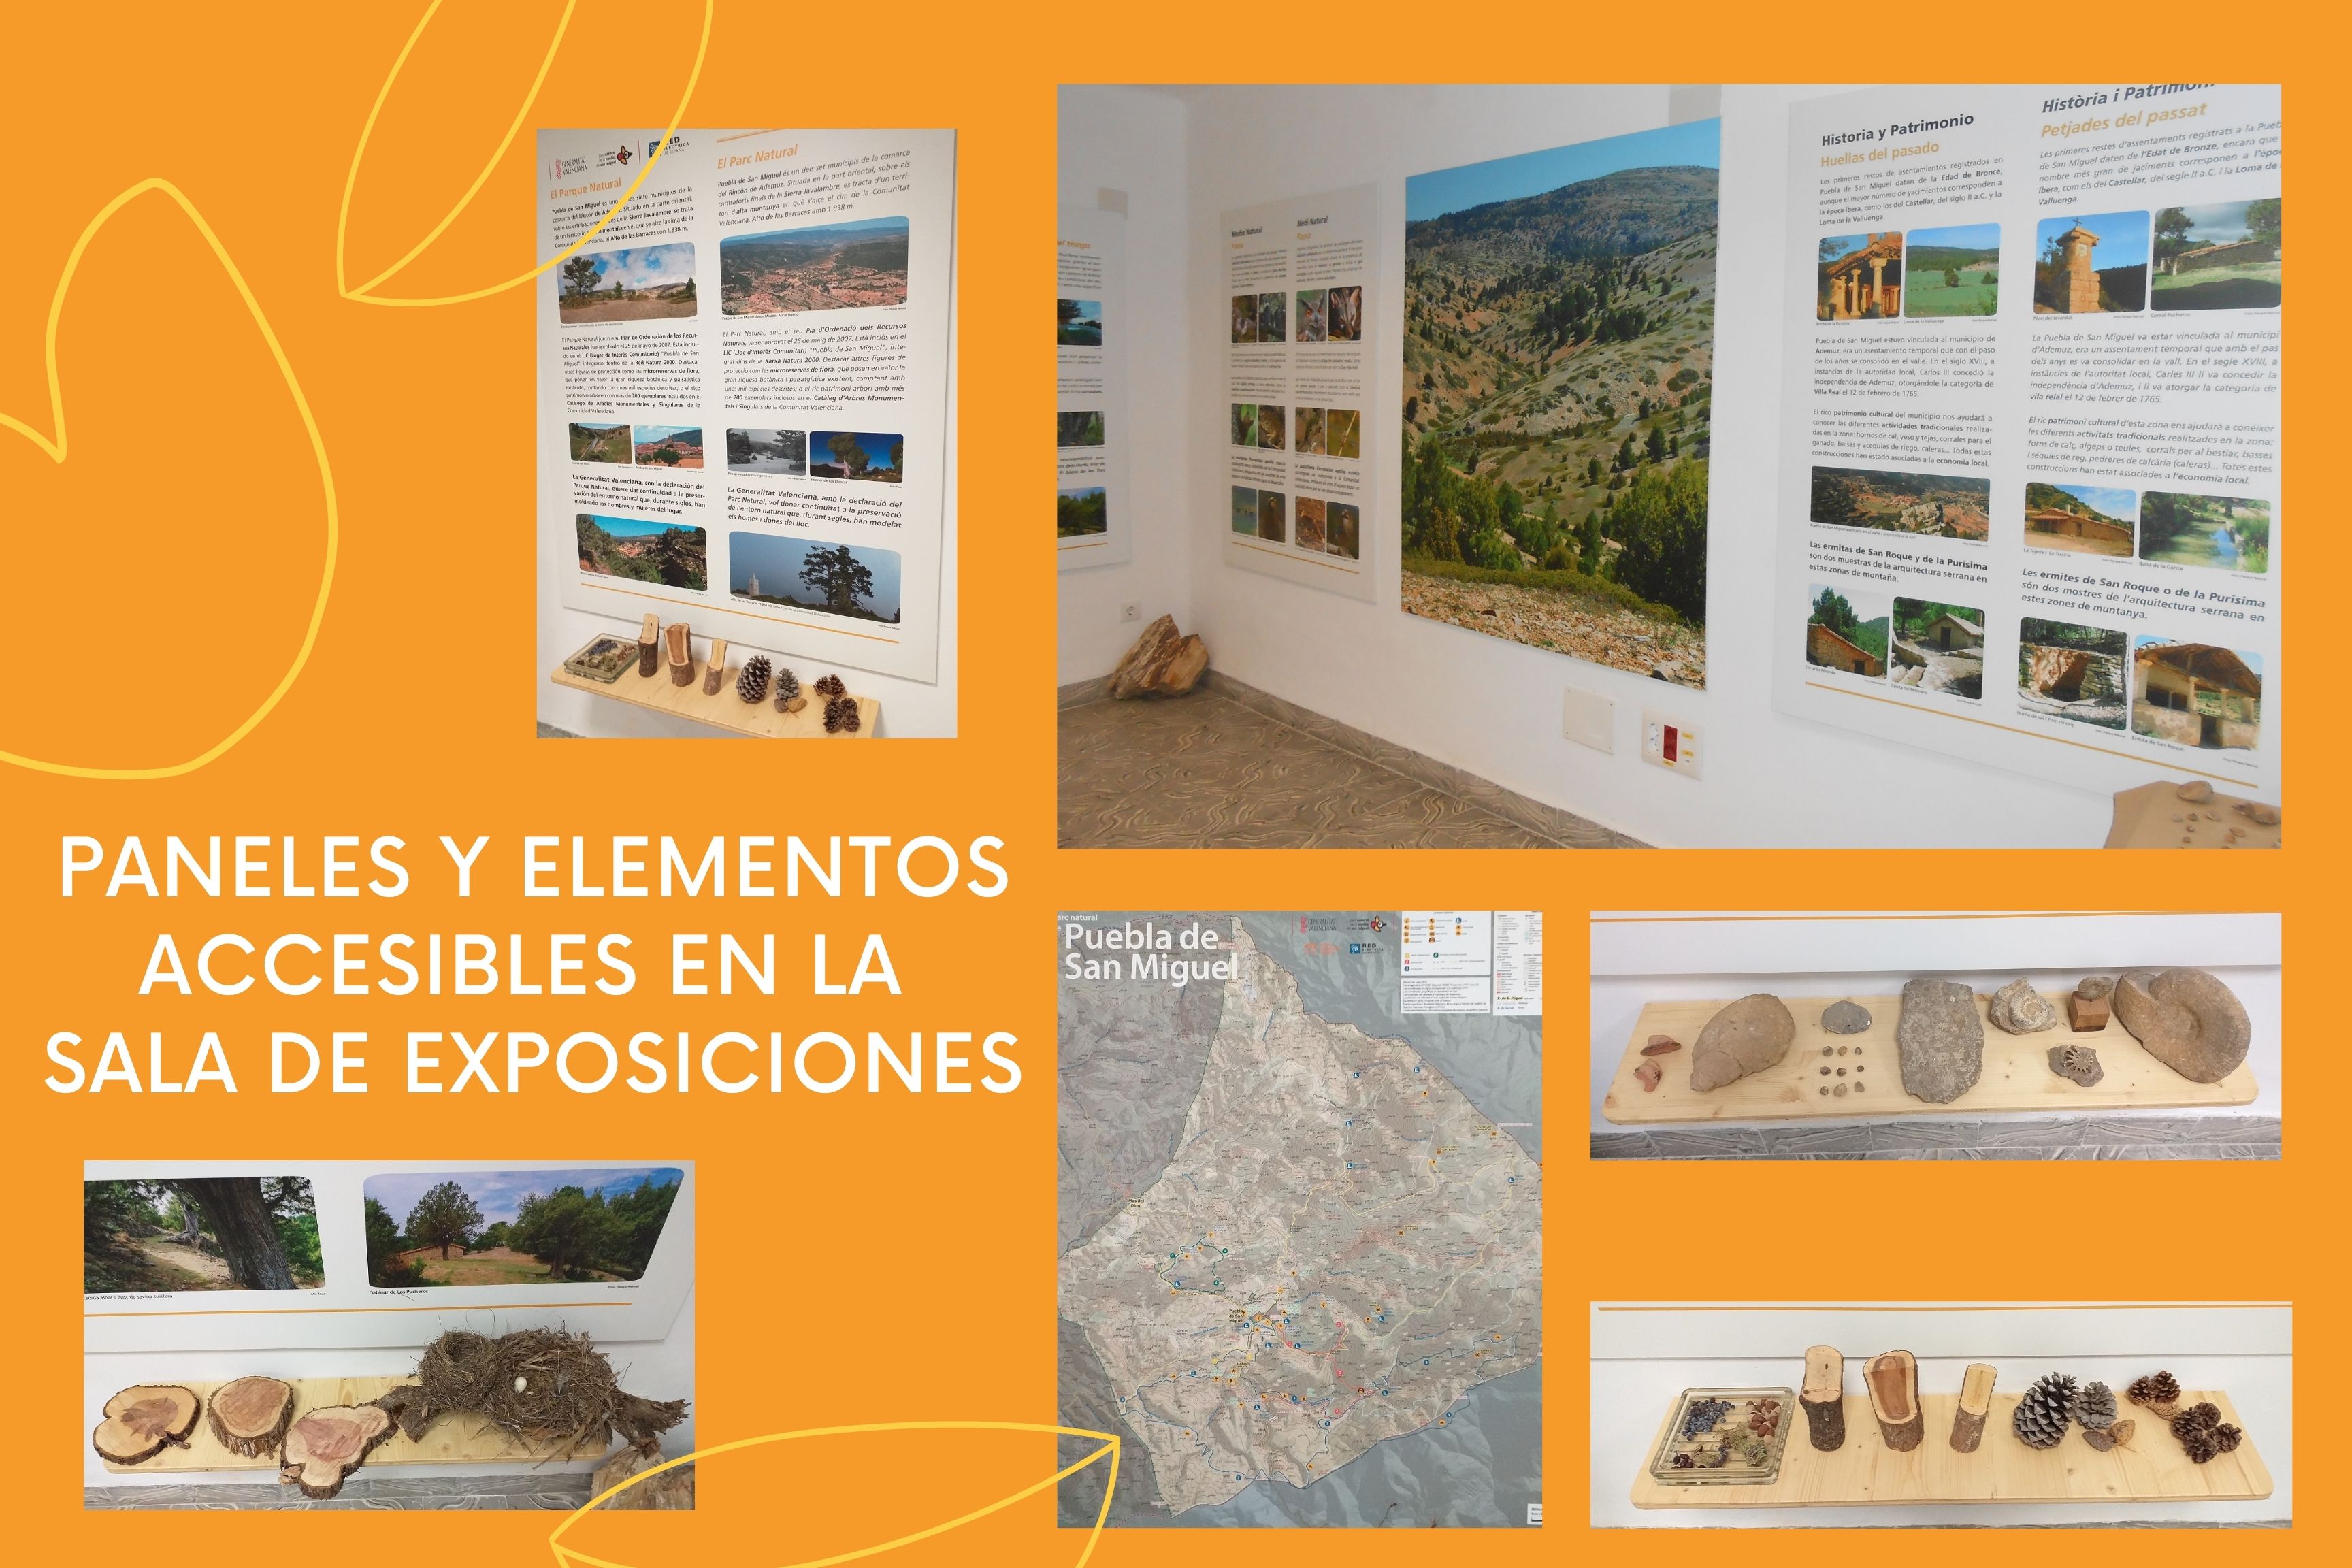 Imágen con elementos existentes en la Sala de Exposiciones: paneles, mapas, tocones de árboles, fósiles...